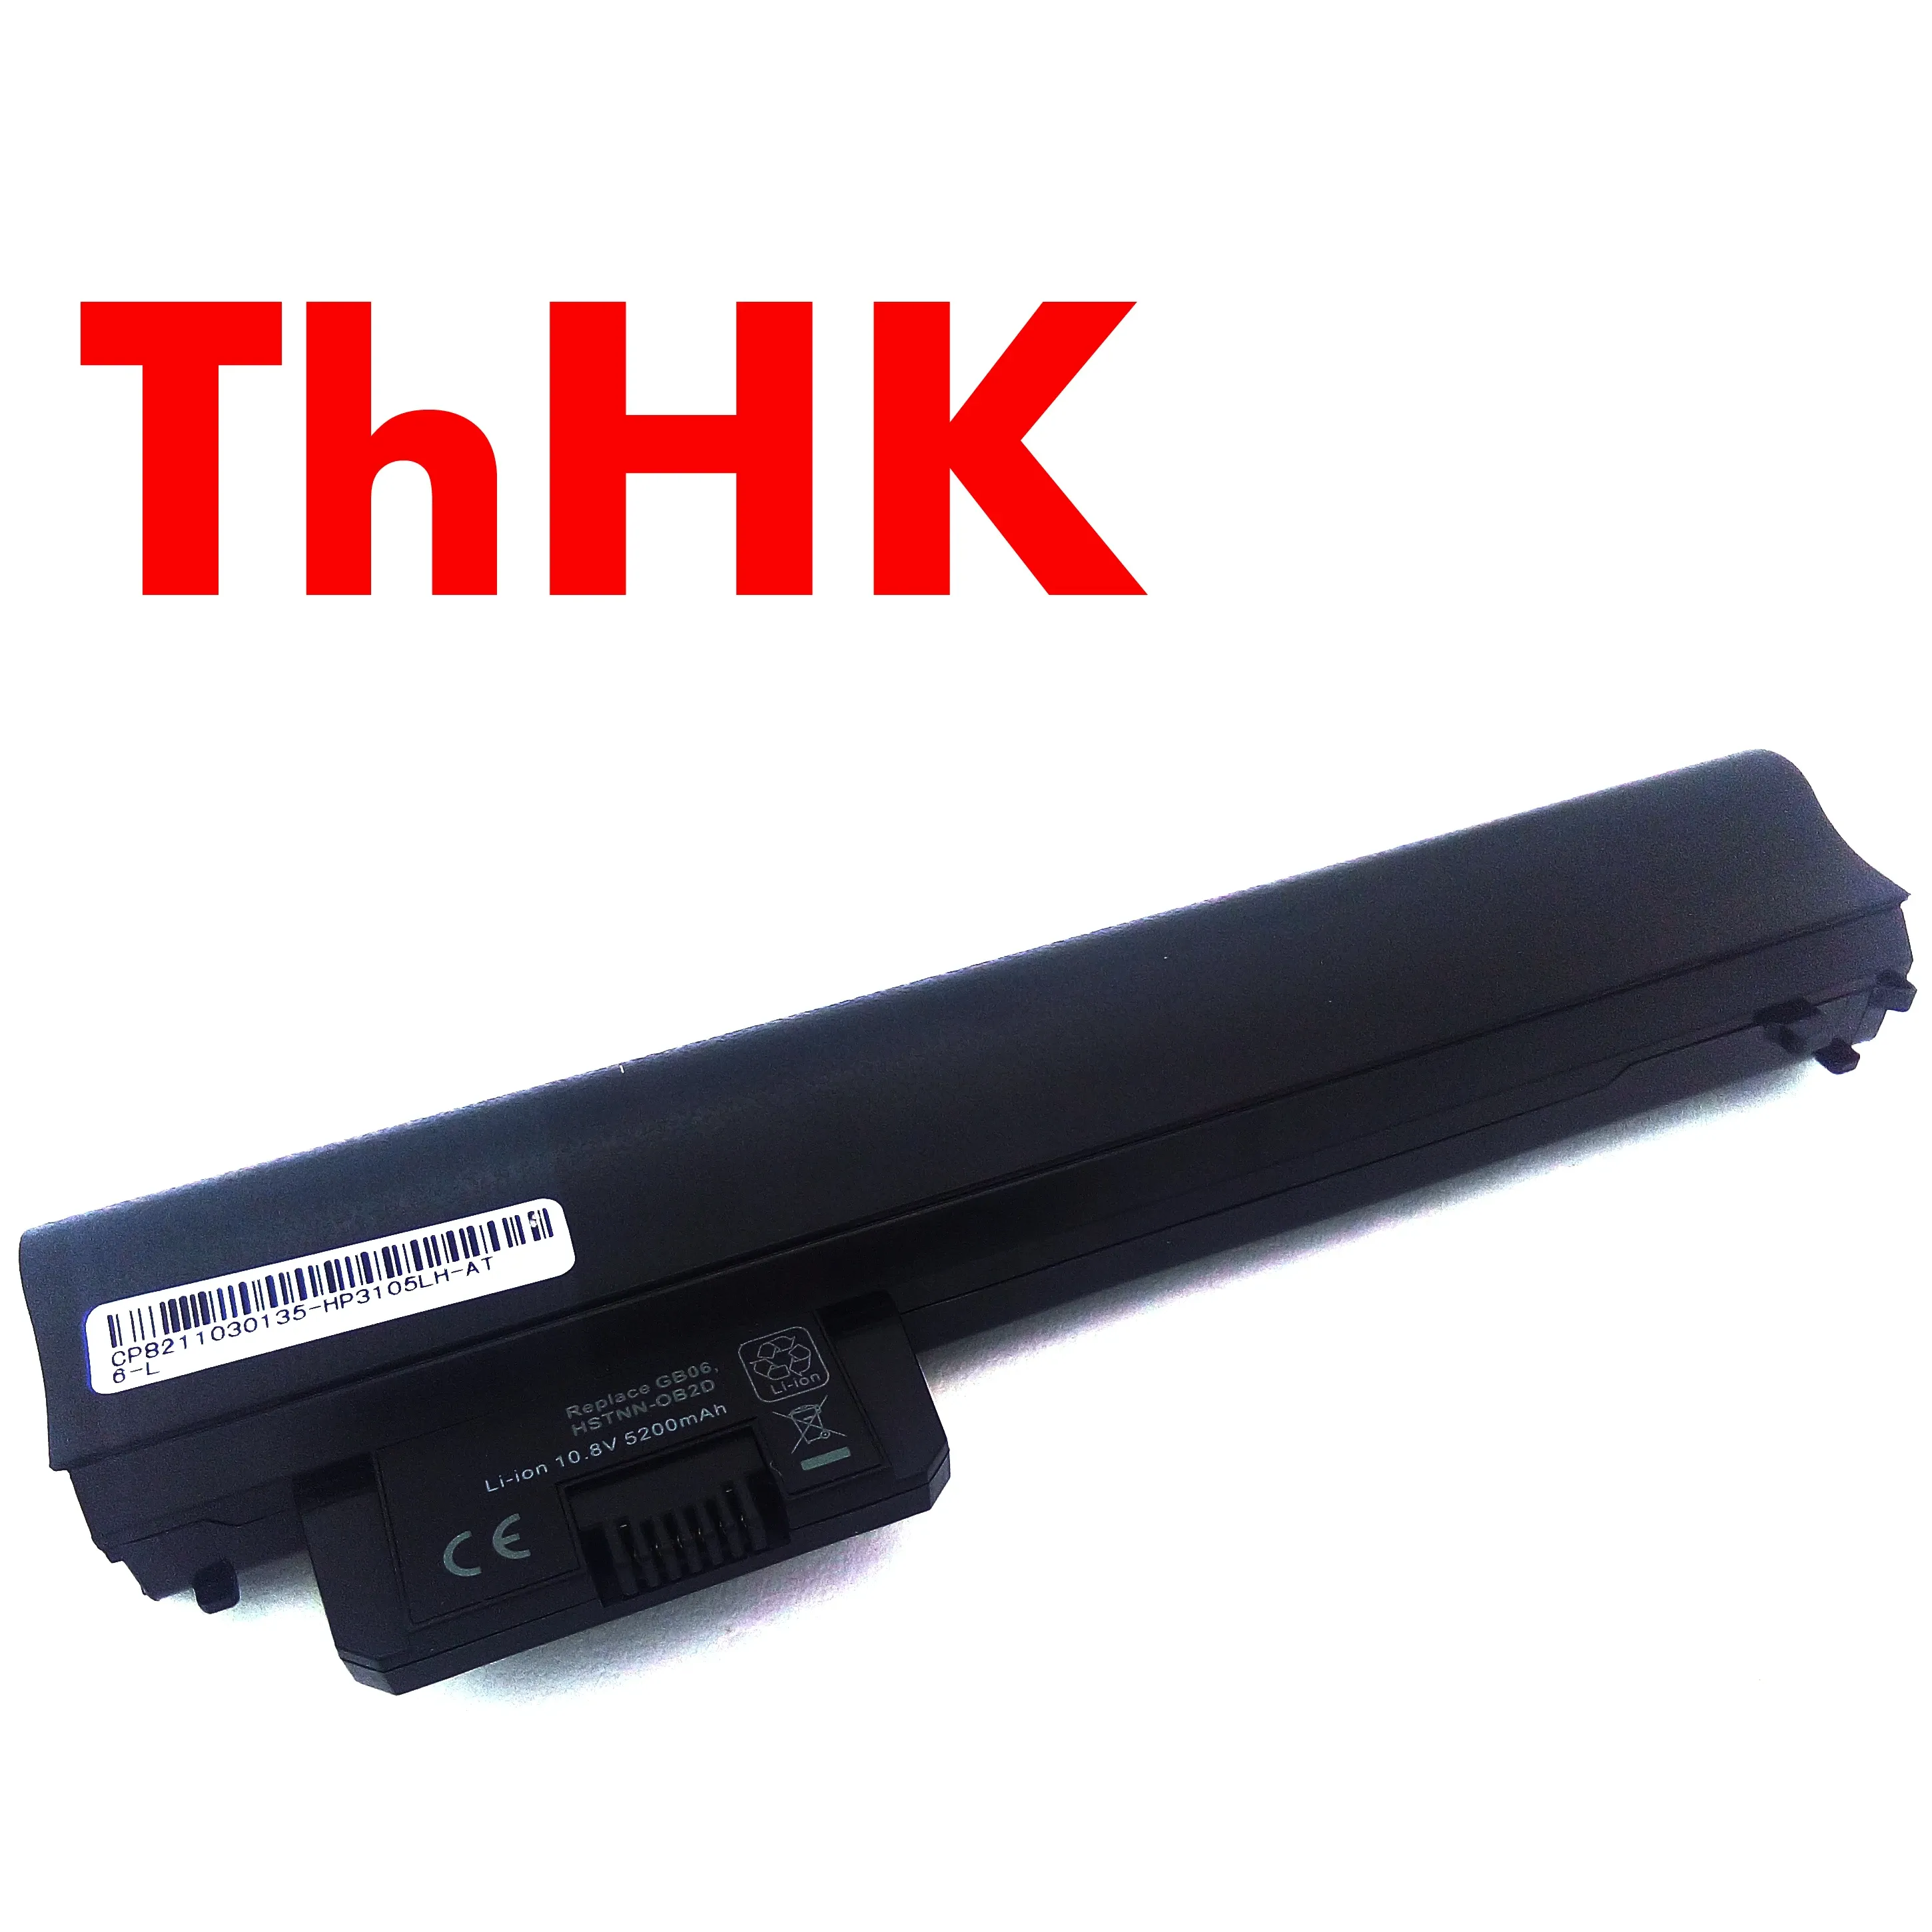 Batteries Black GB06 HSTNNOB2D HSTNNYB2D Batterie d'ordinateur portable de remplacement pour HP 3105M 3115M Pavilion DM13000 DM13000AU DM1Z3000